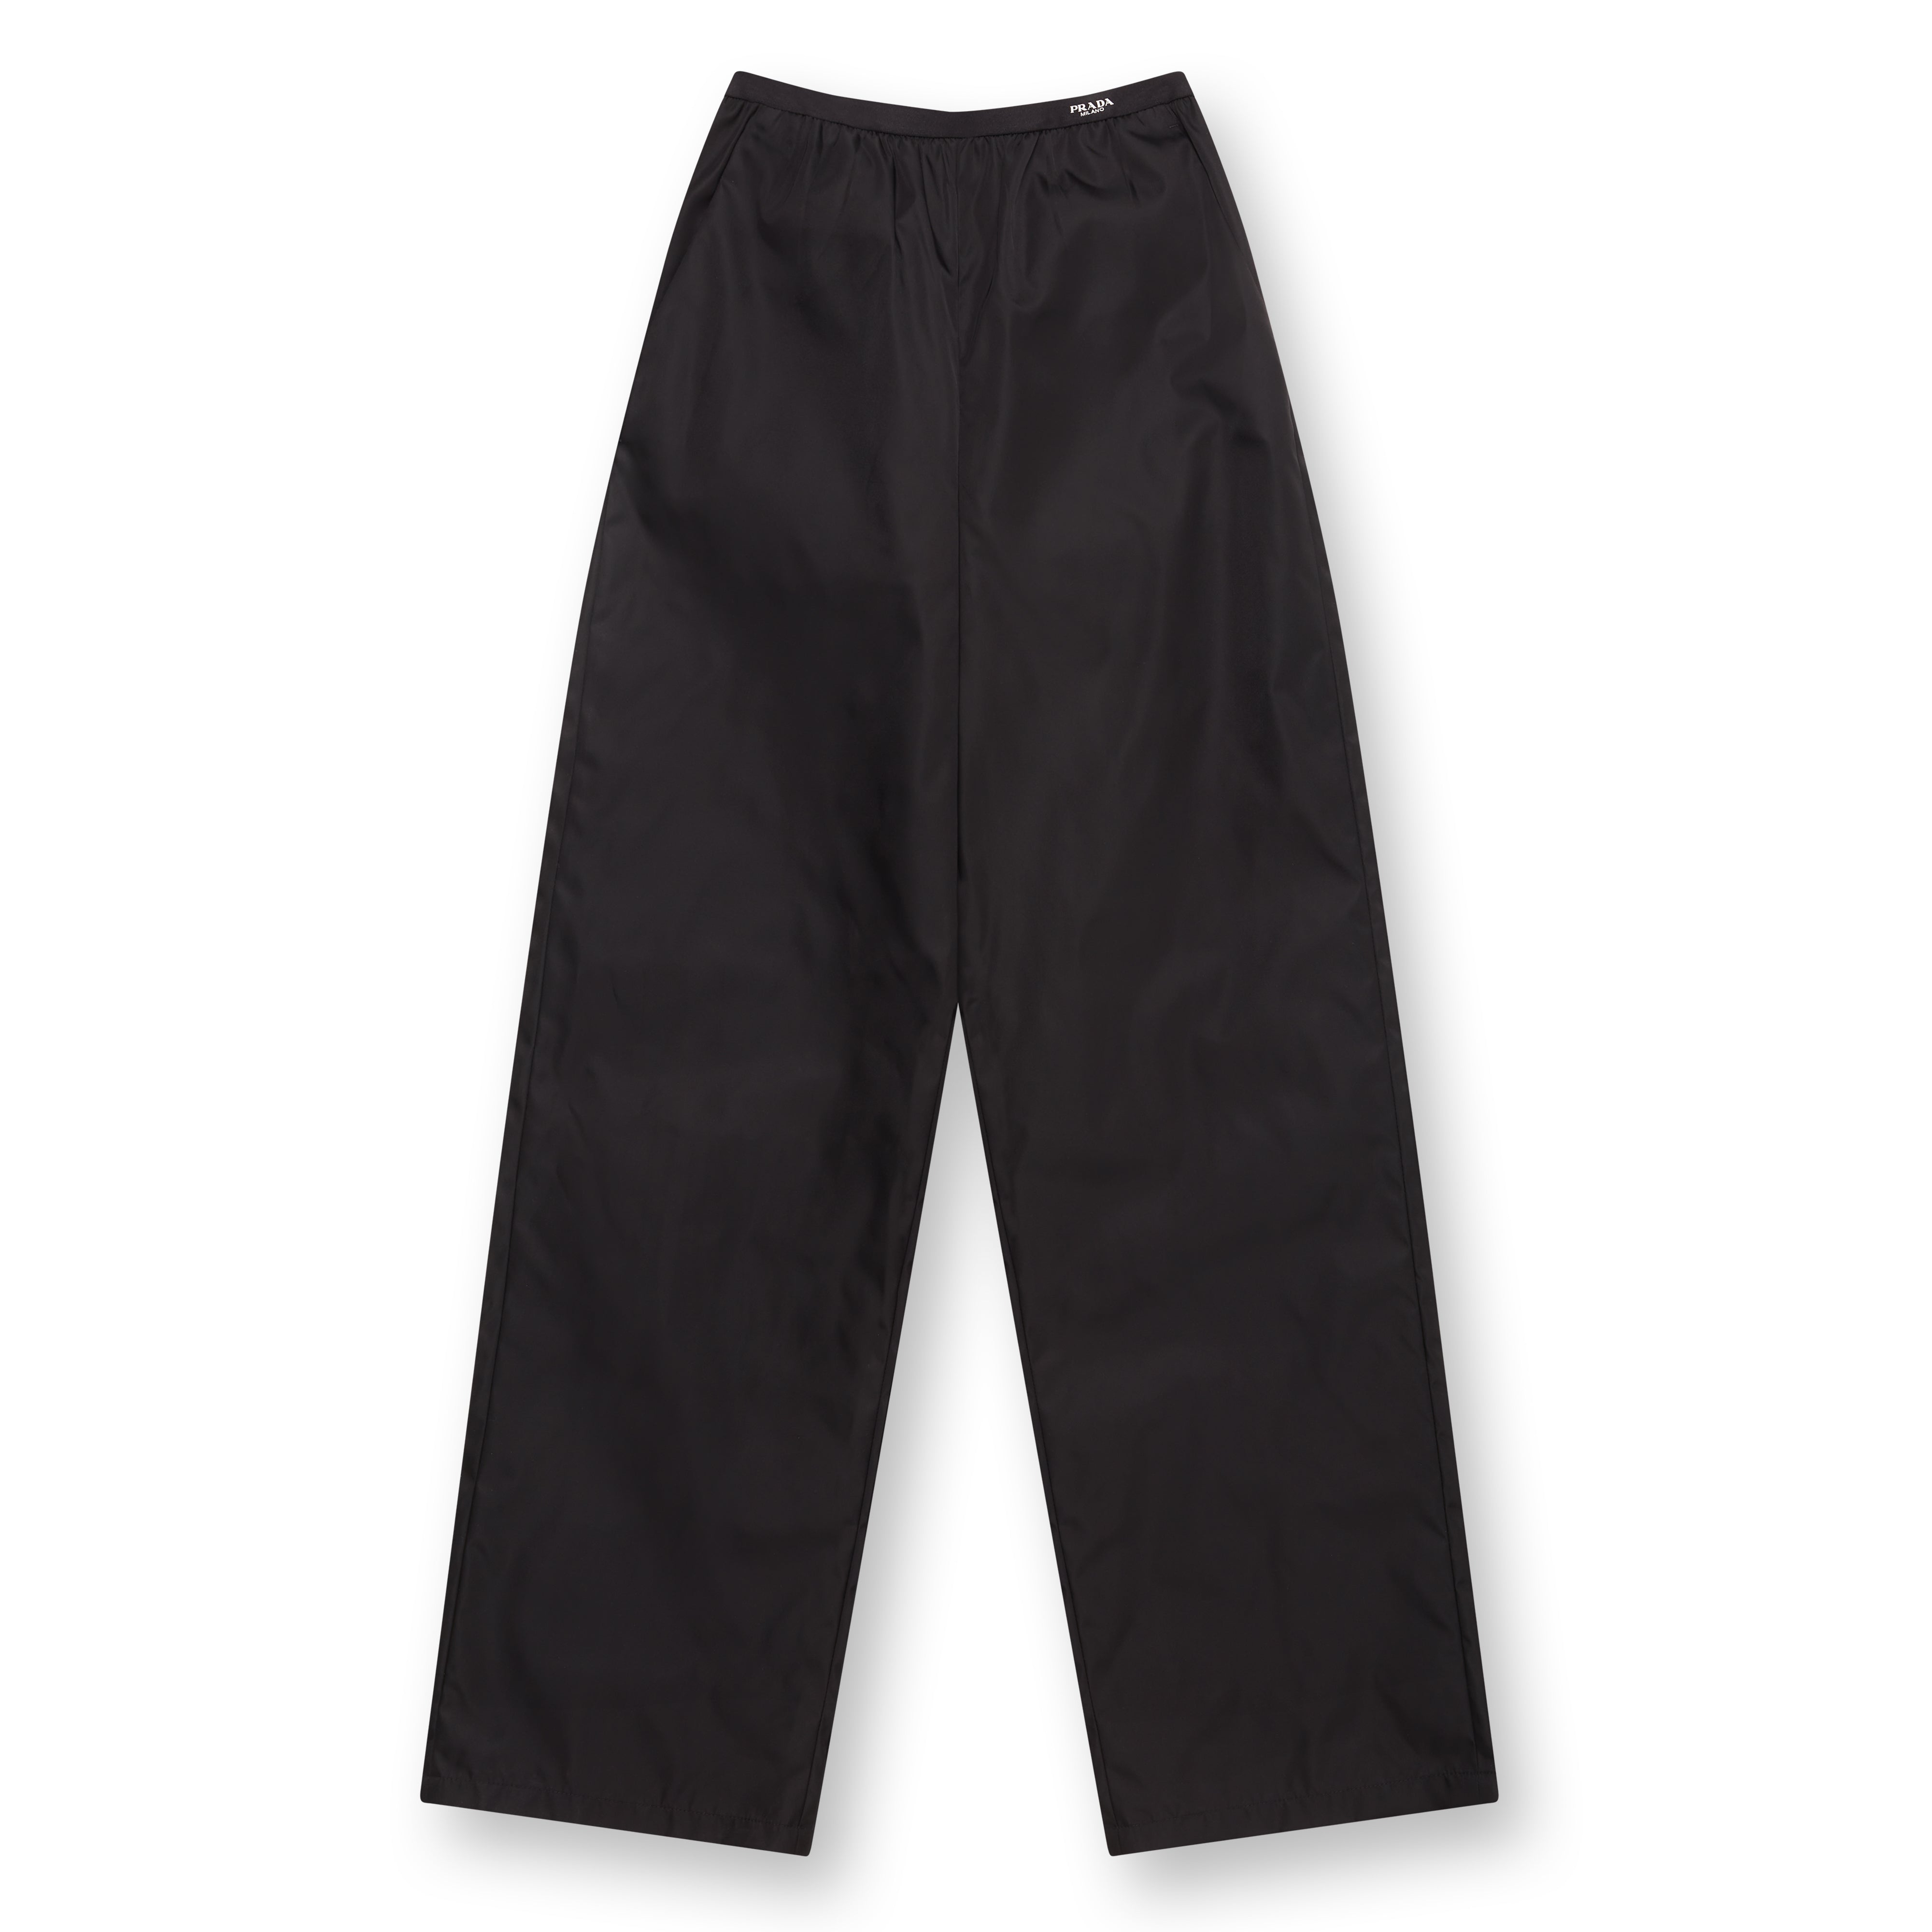 Prada - Women’s Re-Nylon Pants - (Black)